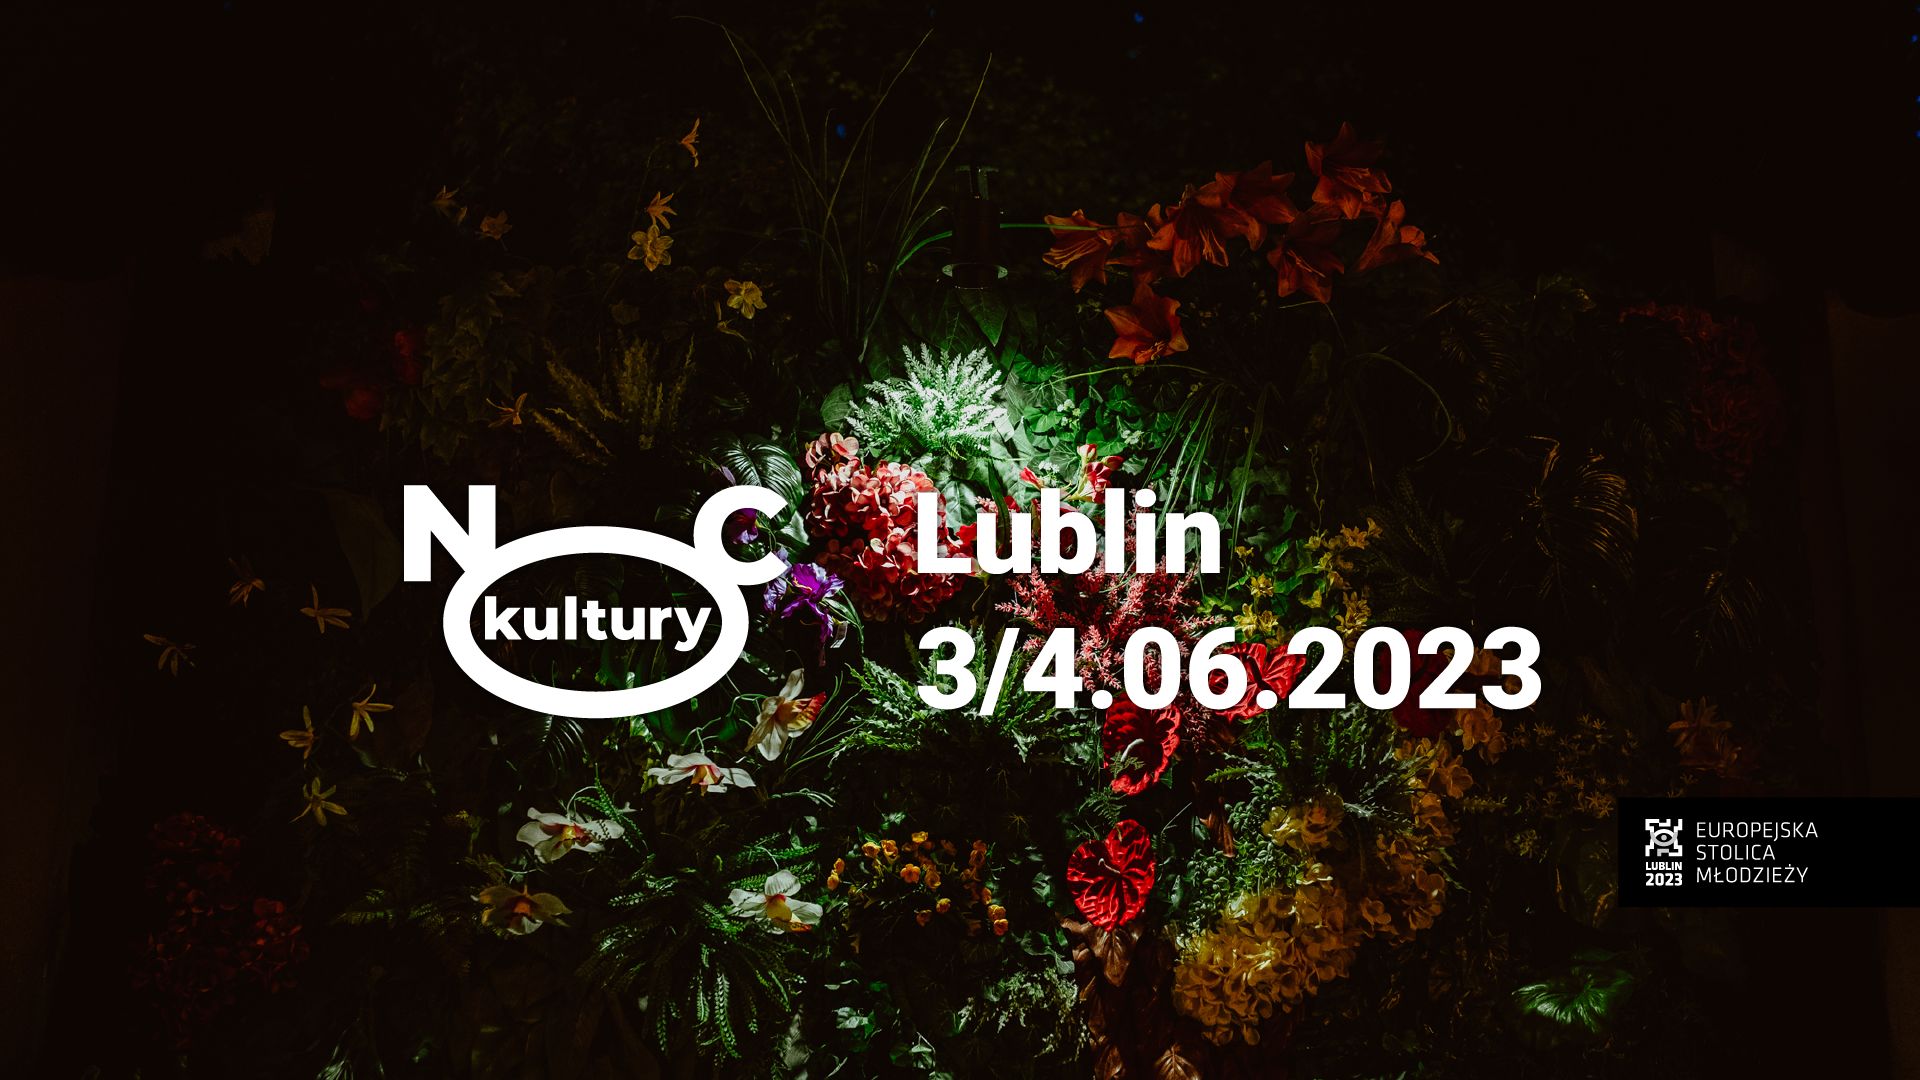 Instalacja artystyczna z kwiatów. Są podświetlone. Logo Nocy Kultury. Napis: 3/4.06.2023 Lublin